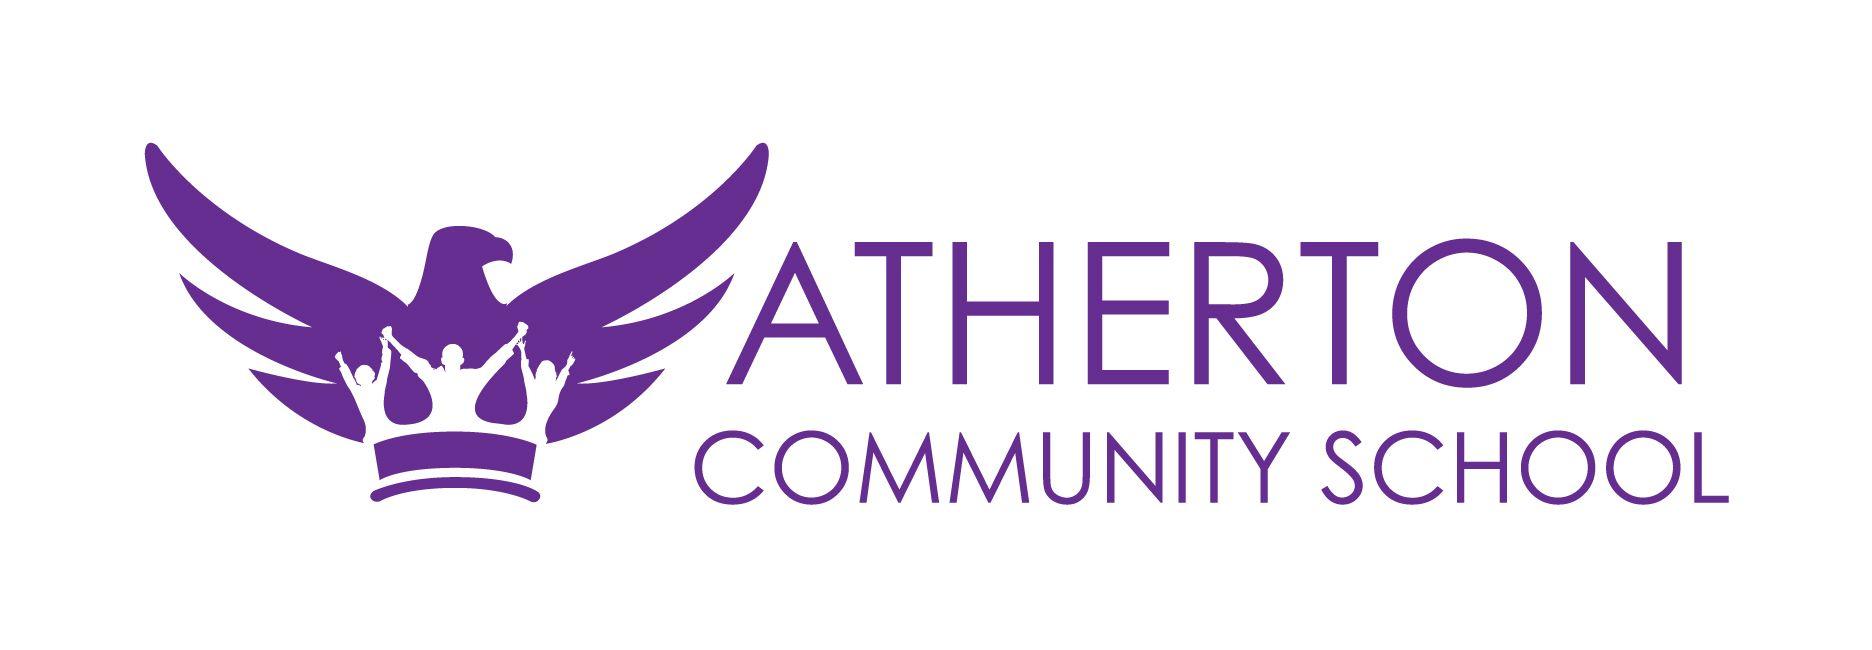 Purple School Logo - Atherton Community School - Anvilding